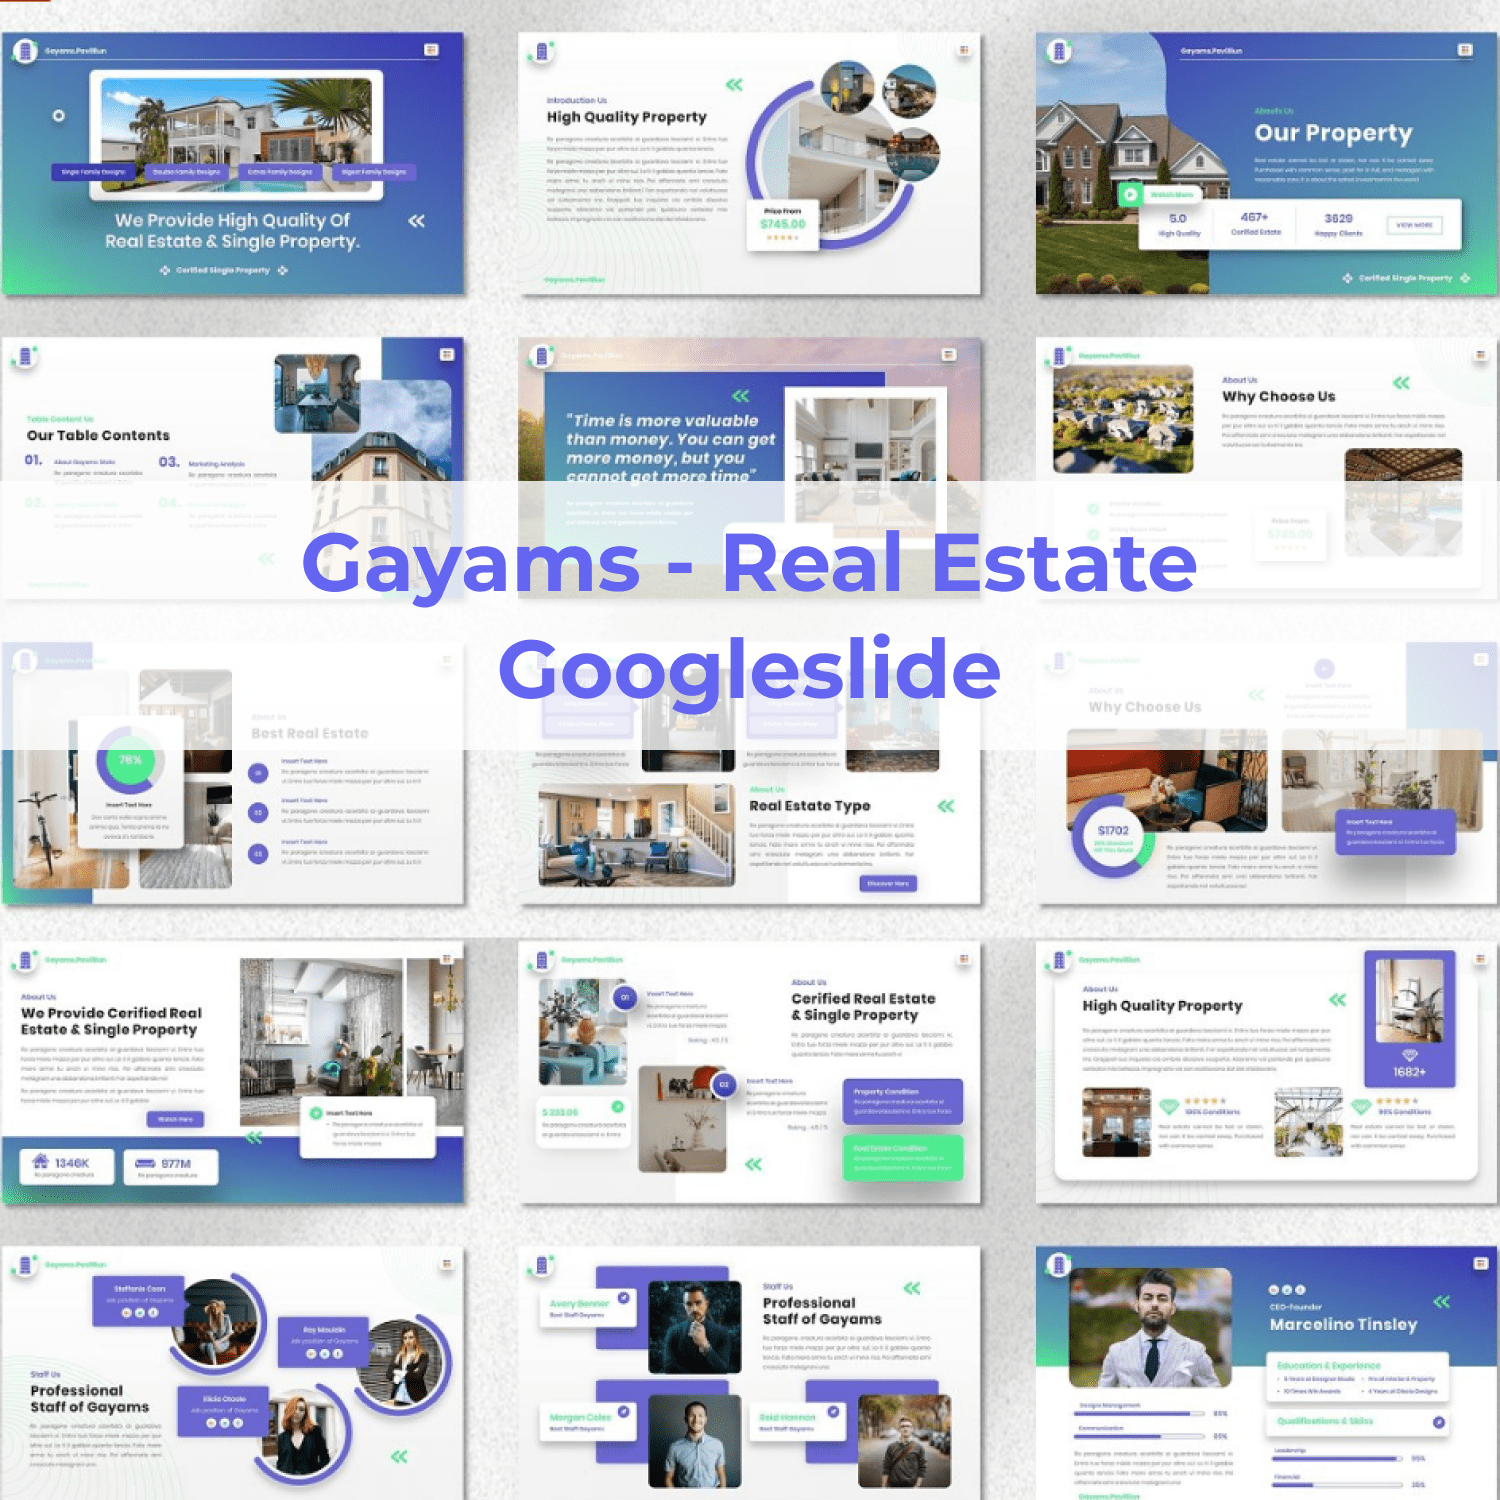 Gayams - Real Estate Googleslide main cover.